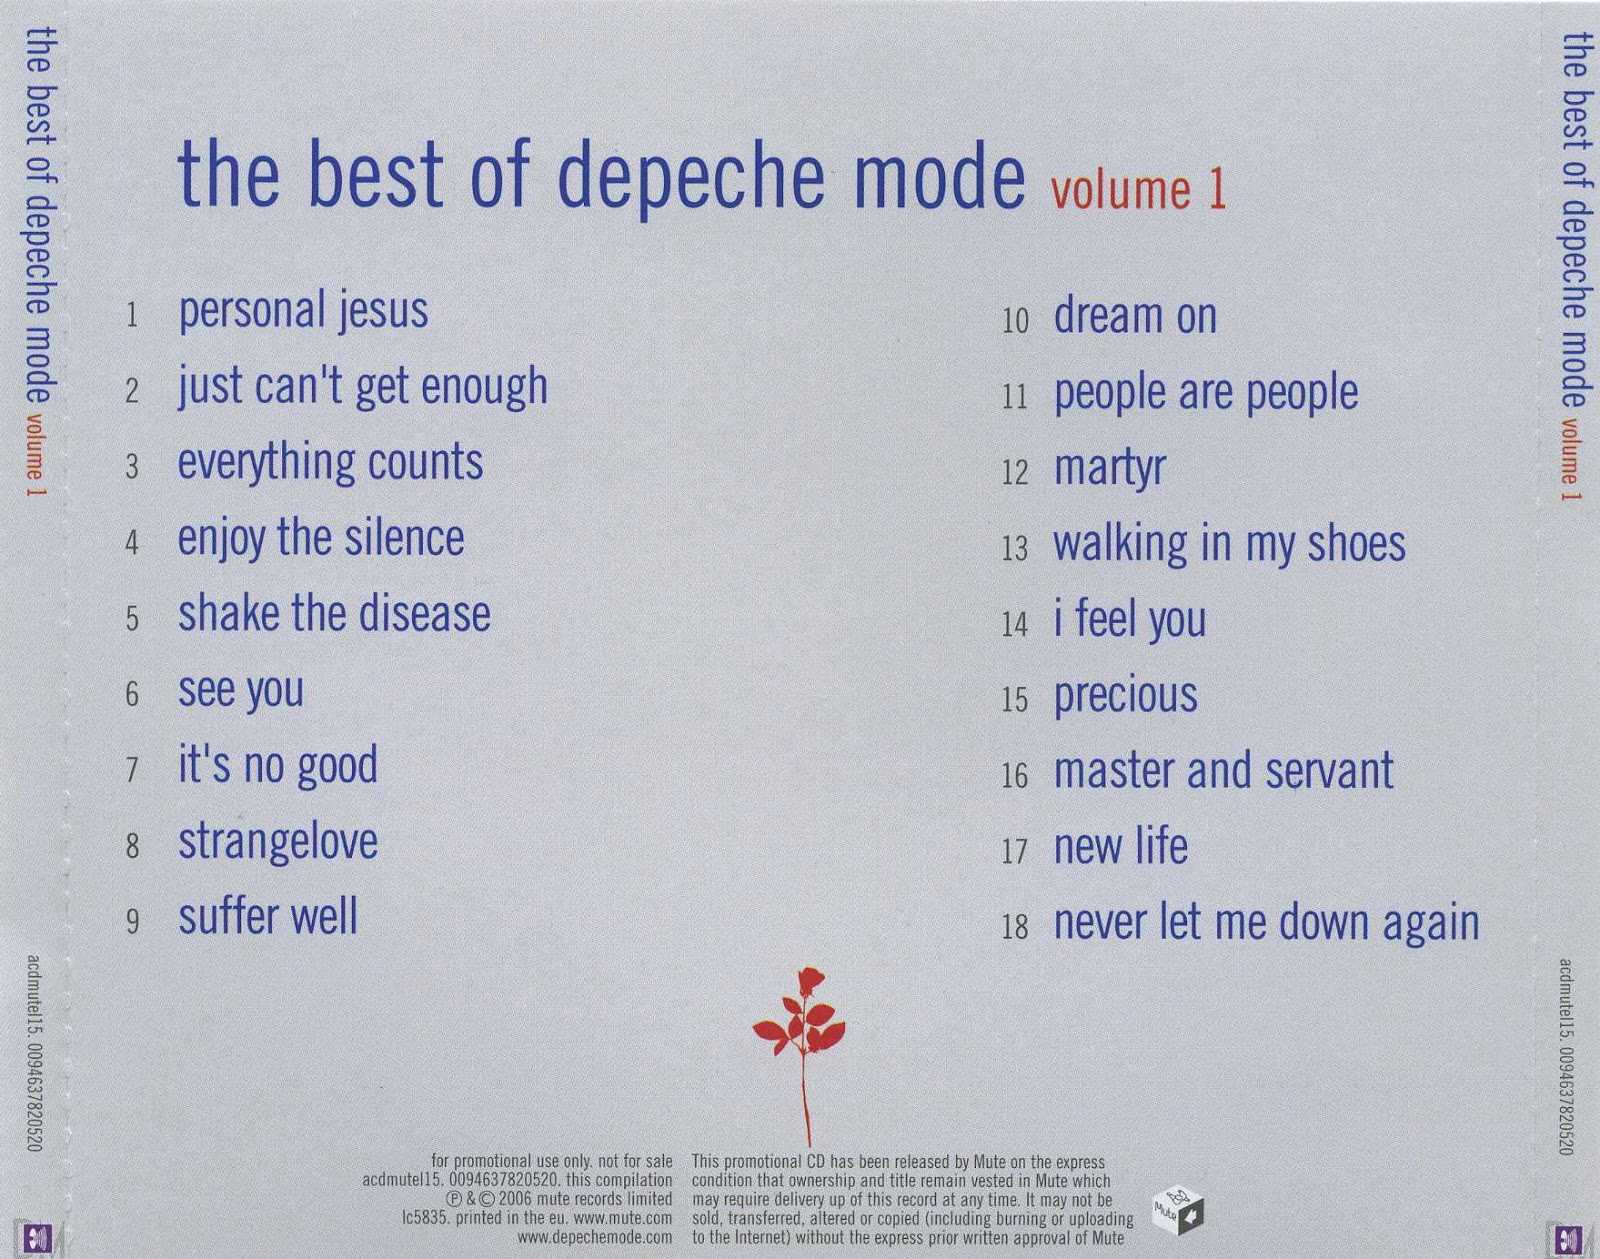 Как depeche mode записали «violator» и стали супергруппой?